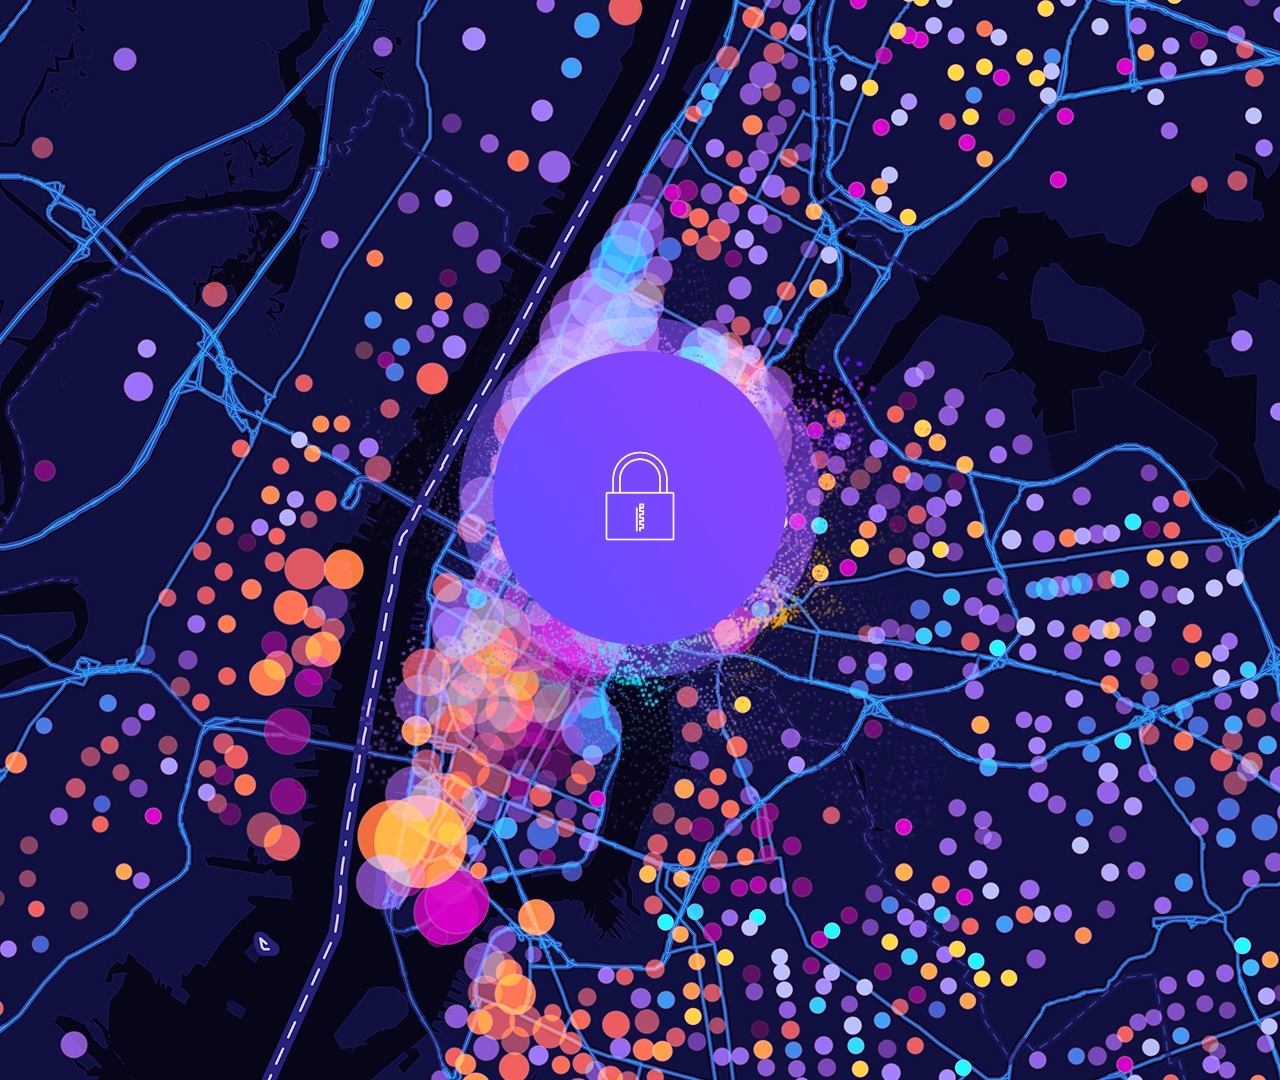 锁形图标和具有紫色、黄色和粉红色圆形数据点的数字街道地图